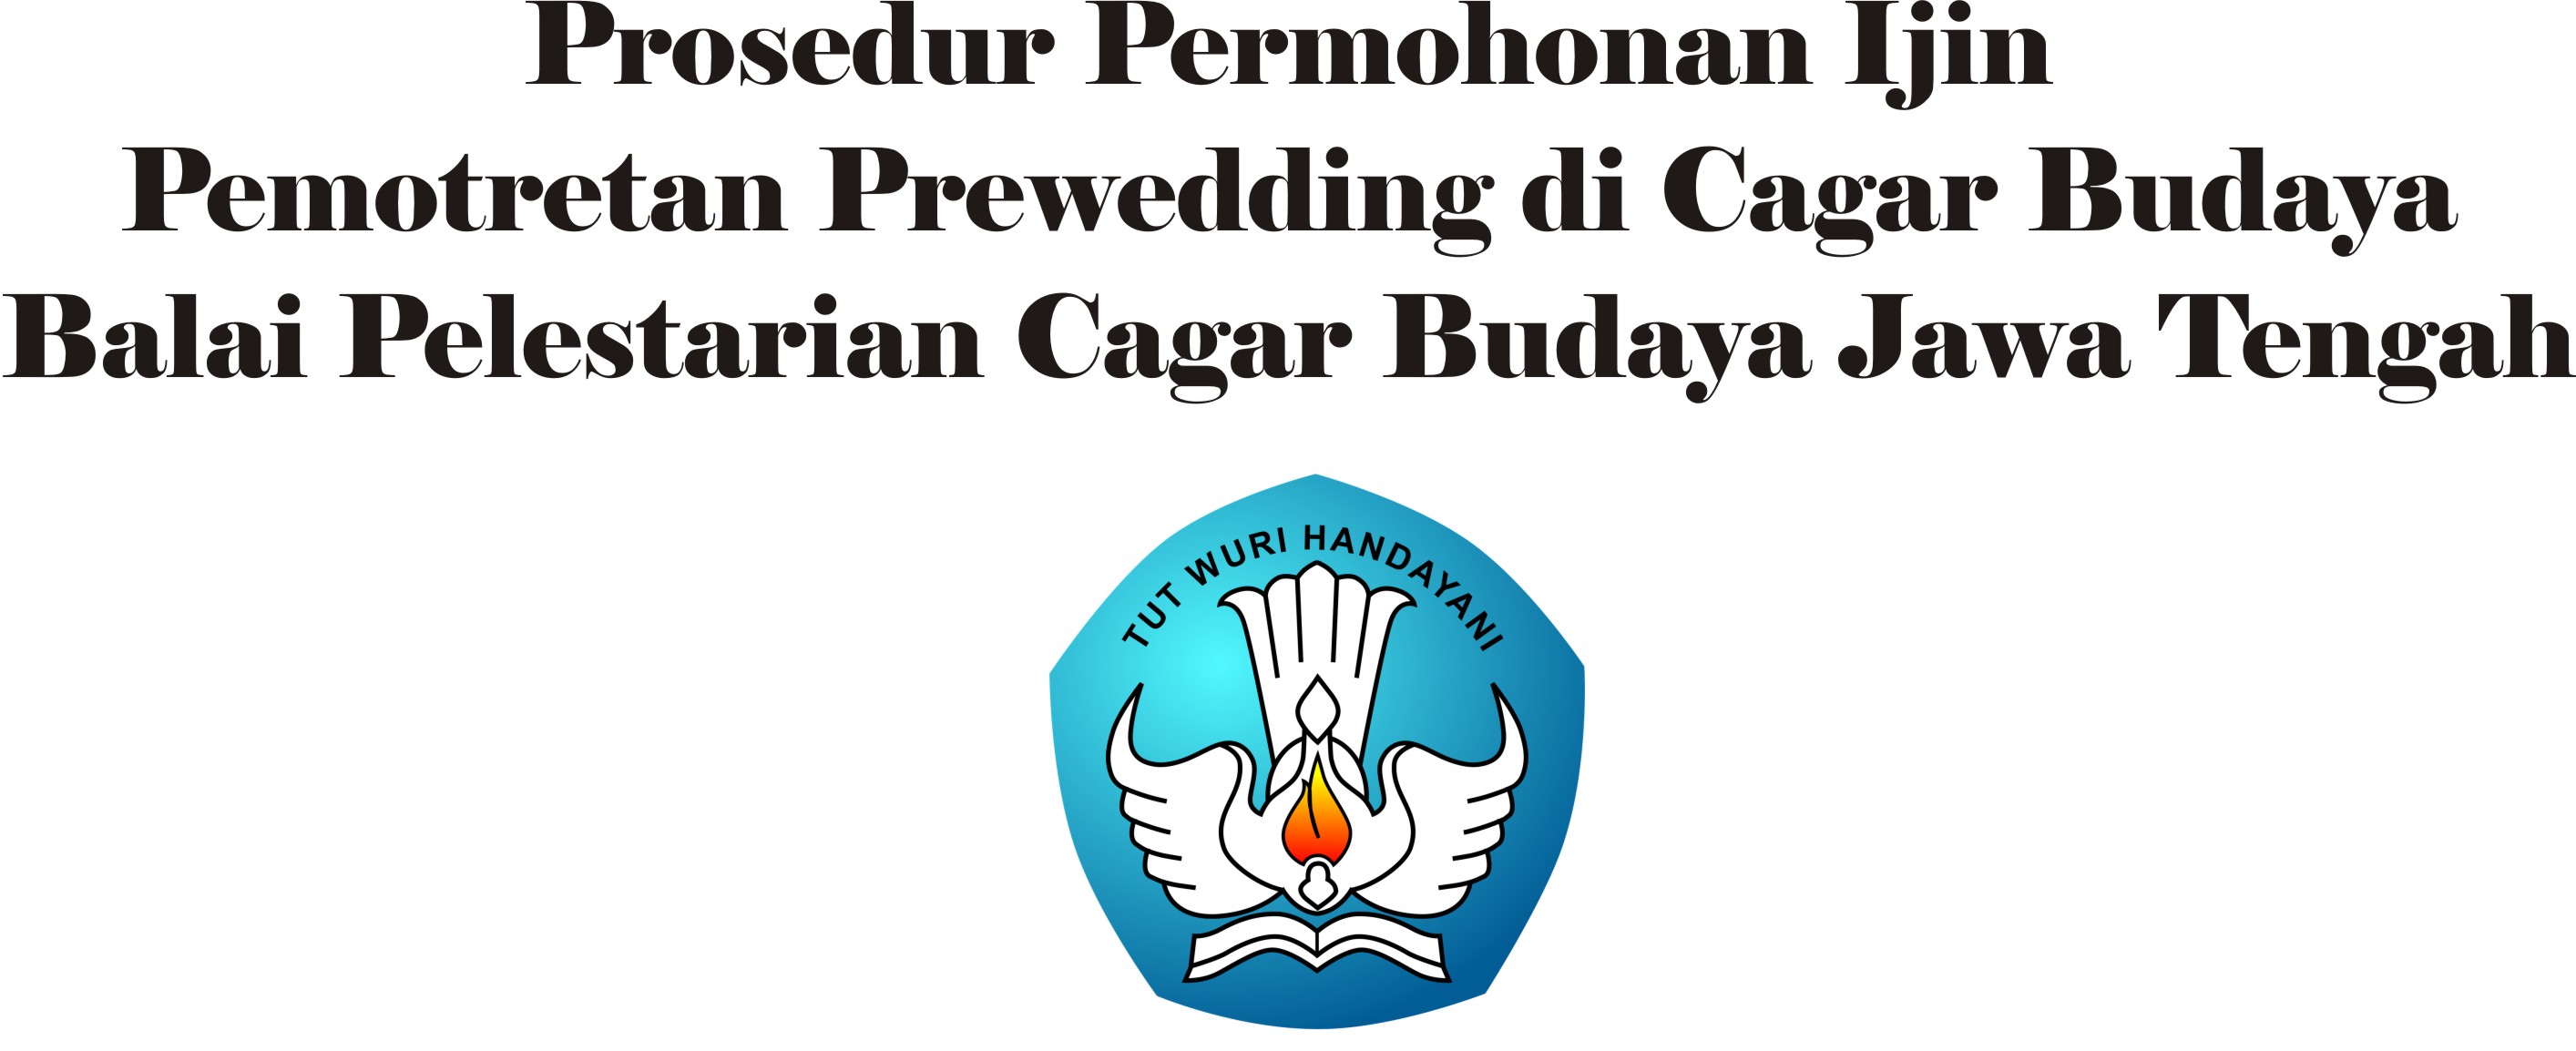 Read more about the article Prosedur Permohonan Ijin Pemotretan Prewedding di Situs Cagar Budaya di Lingkungan Balai Pelestarian Cagar Budaya Jawa Tengah